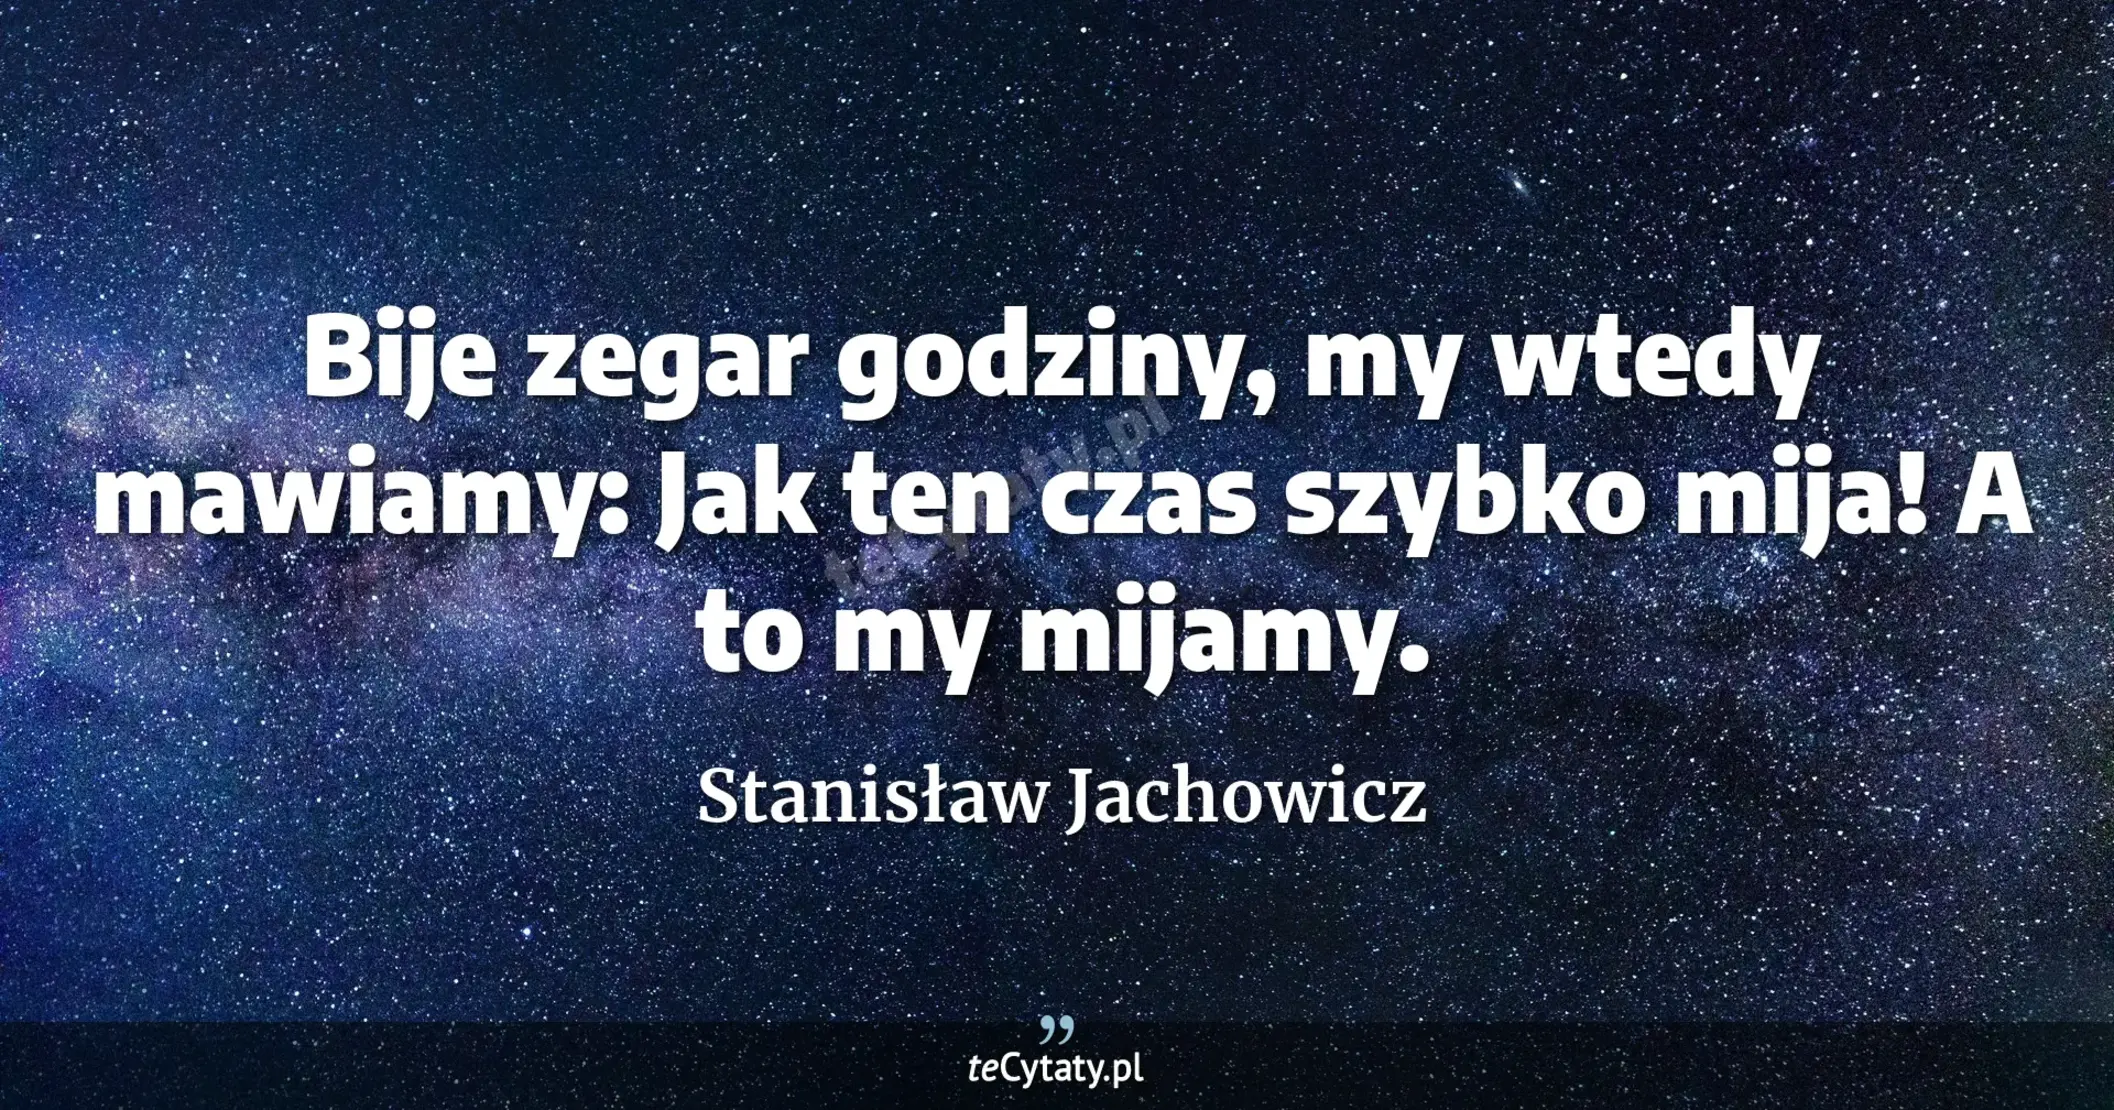 Bije zegar godziny, <br> my wtedy mawiamy: <br>Jak ten czas szybko mija! <br>A to my mijamy. - Stanisław Jachowicz